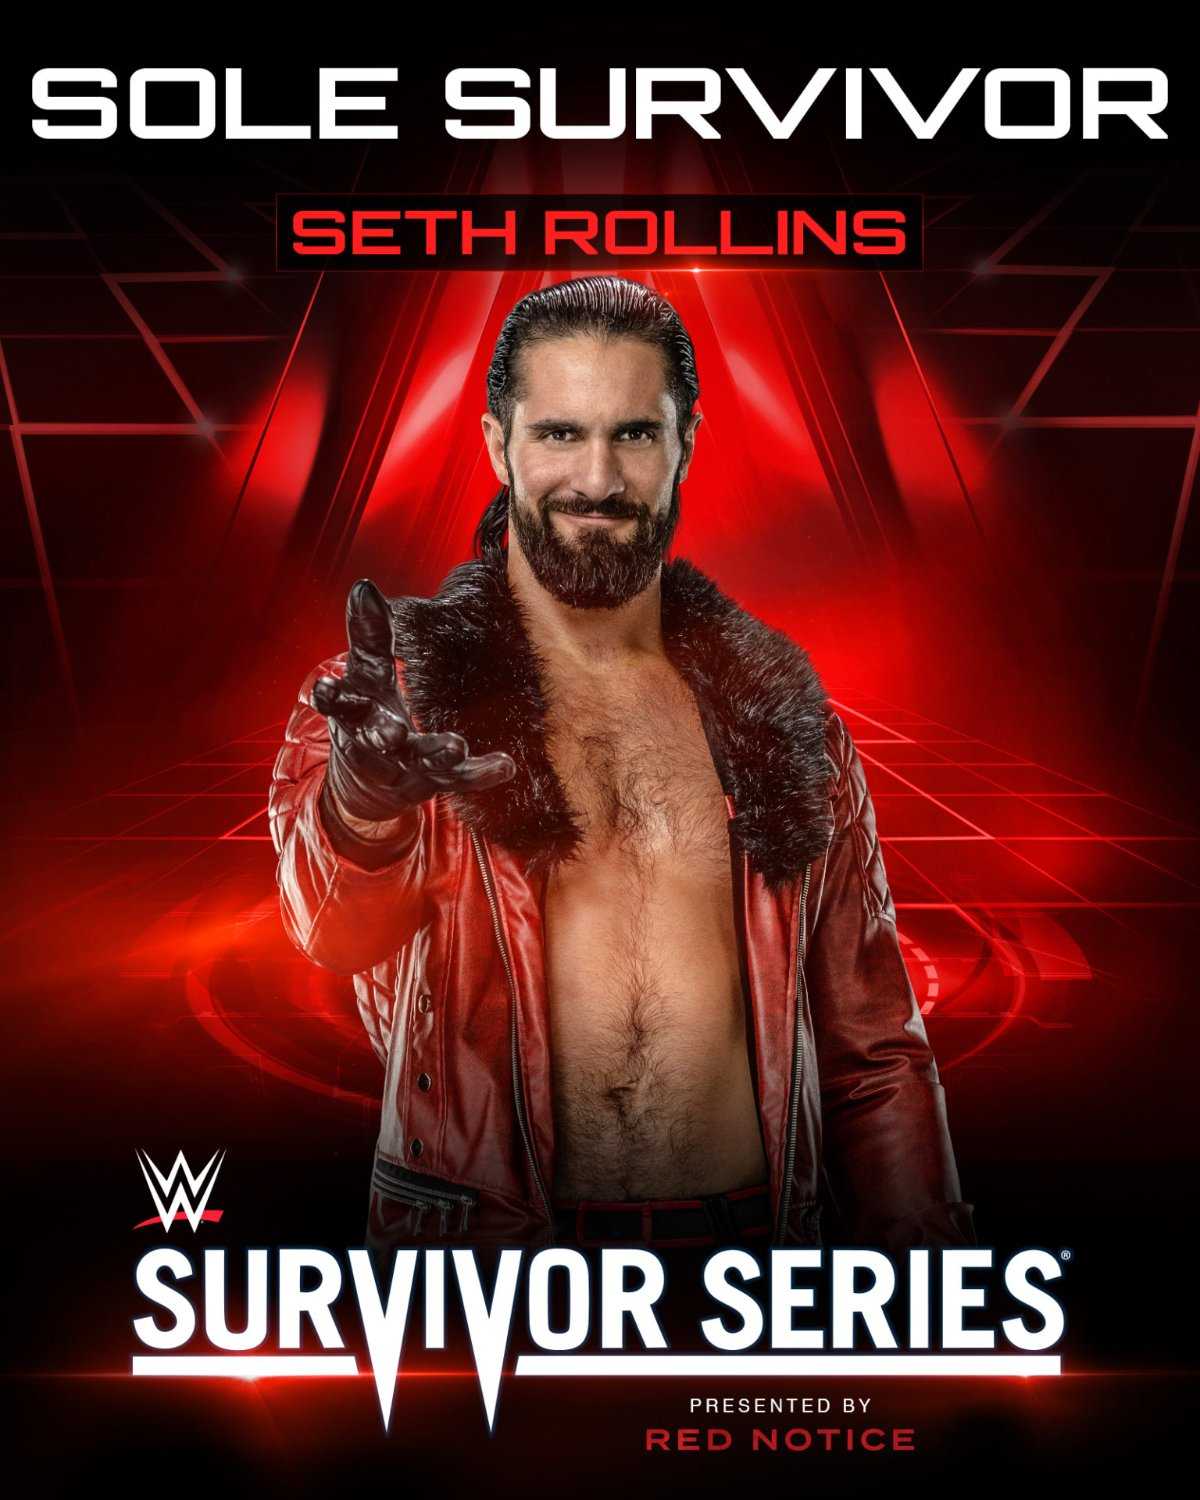 Résultats de la WWE Survivor Series : Seth Rollins met Jeff Hardy à terre pour mener Team Raw à la victoire